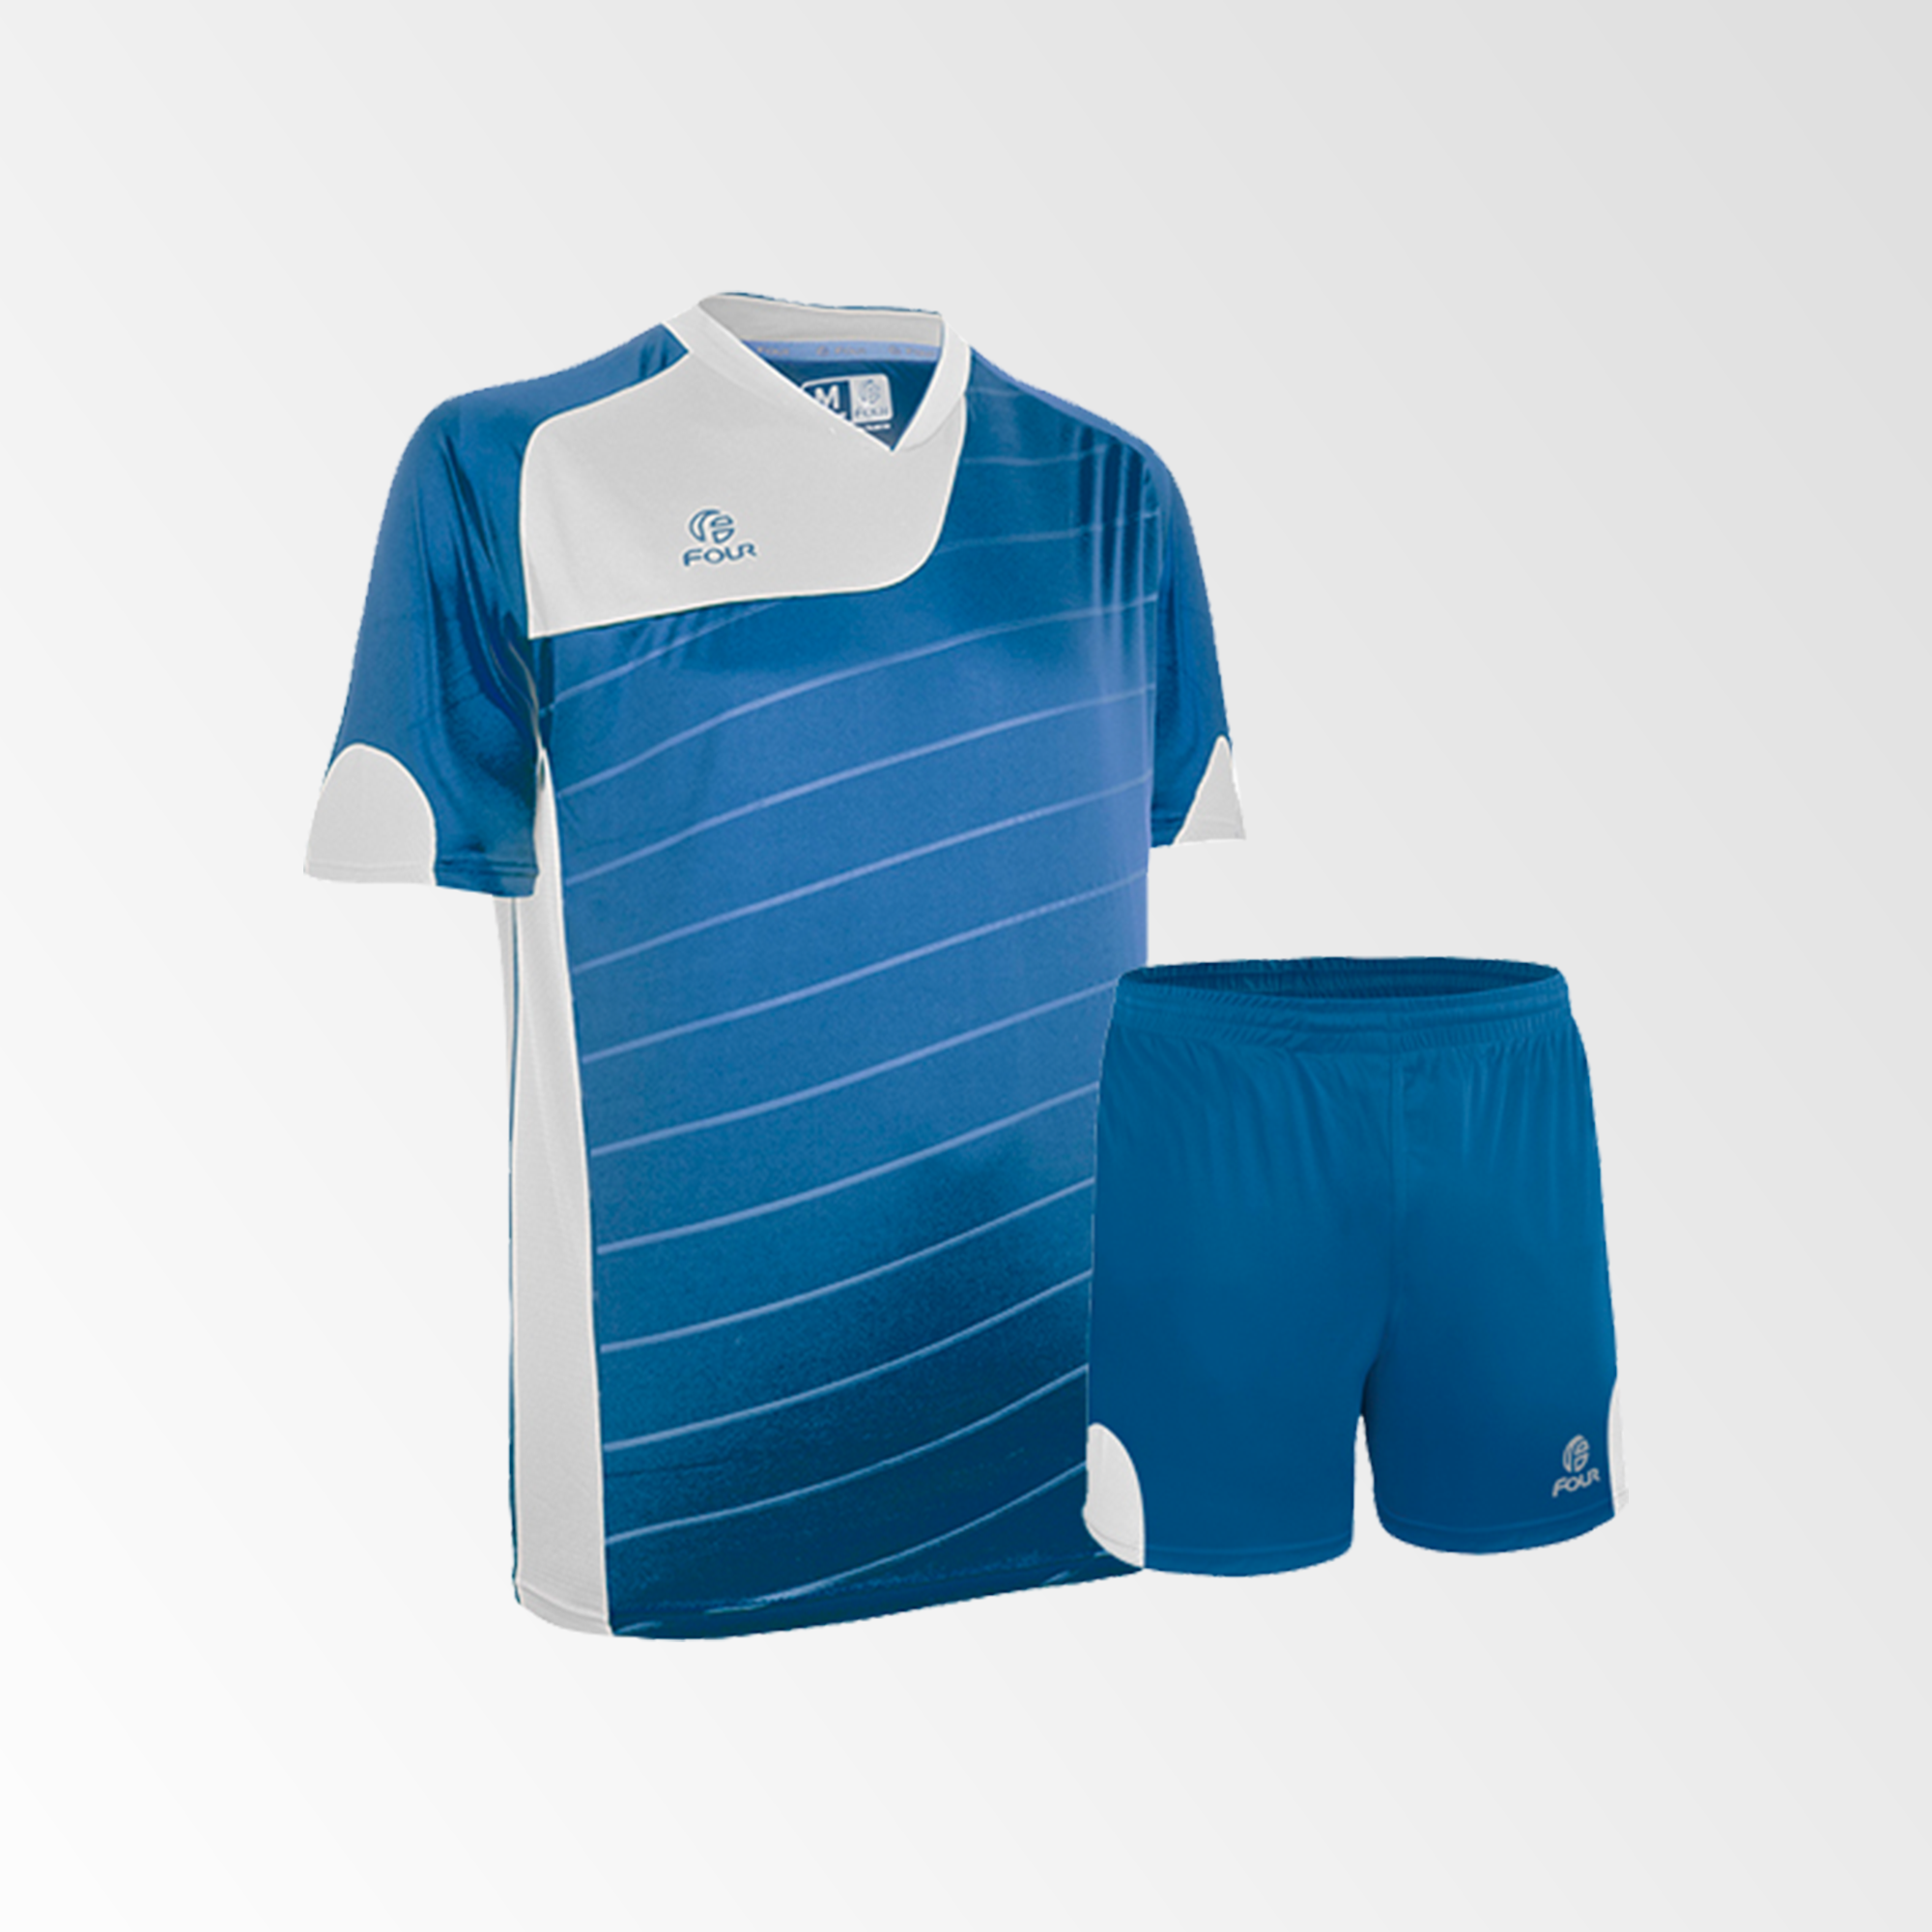 Azul Y Blanco Juego Camiseta Jugadores Uniforme Esports Jersey